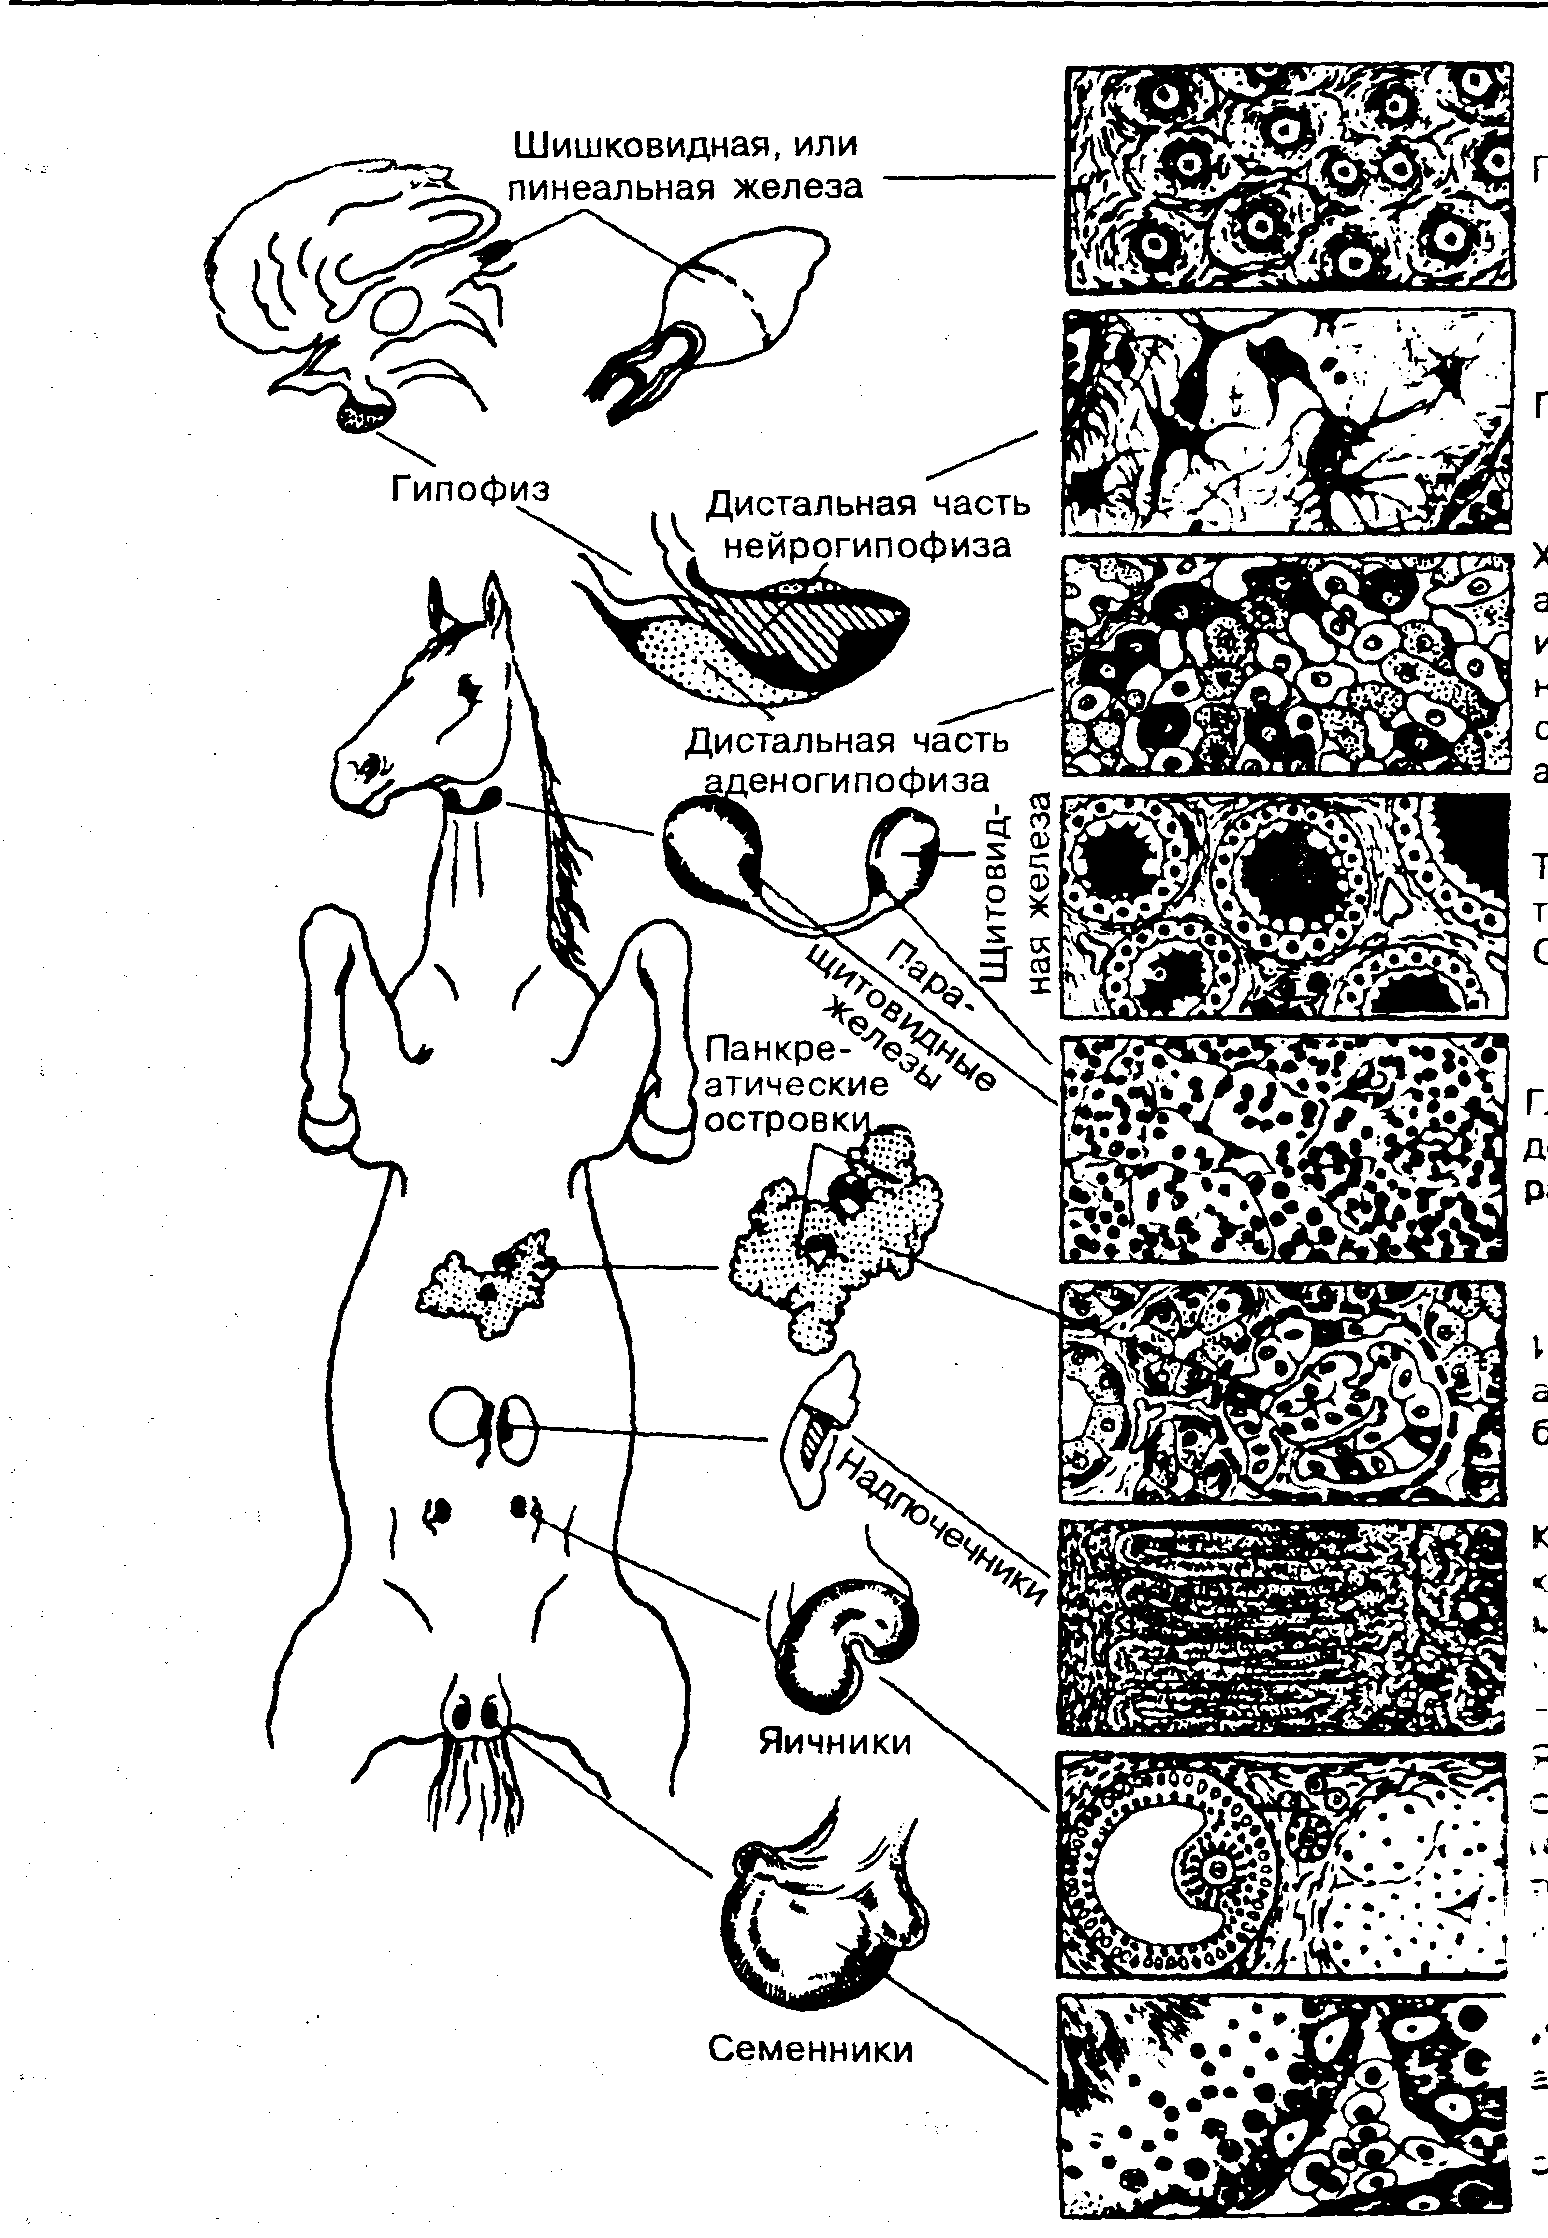 Схема расположения желез внутренней секреции у коровы